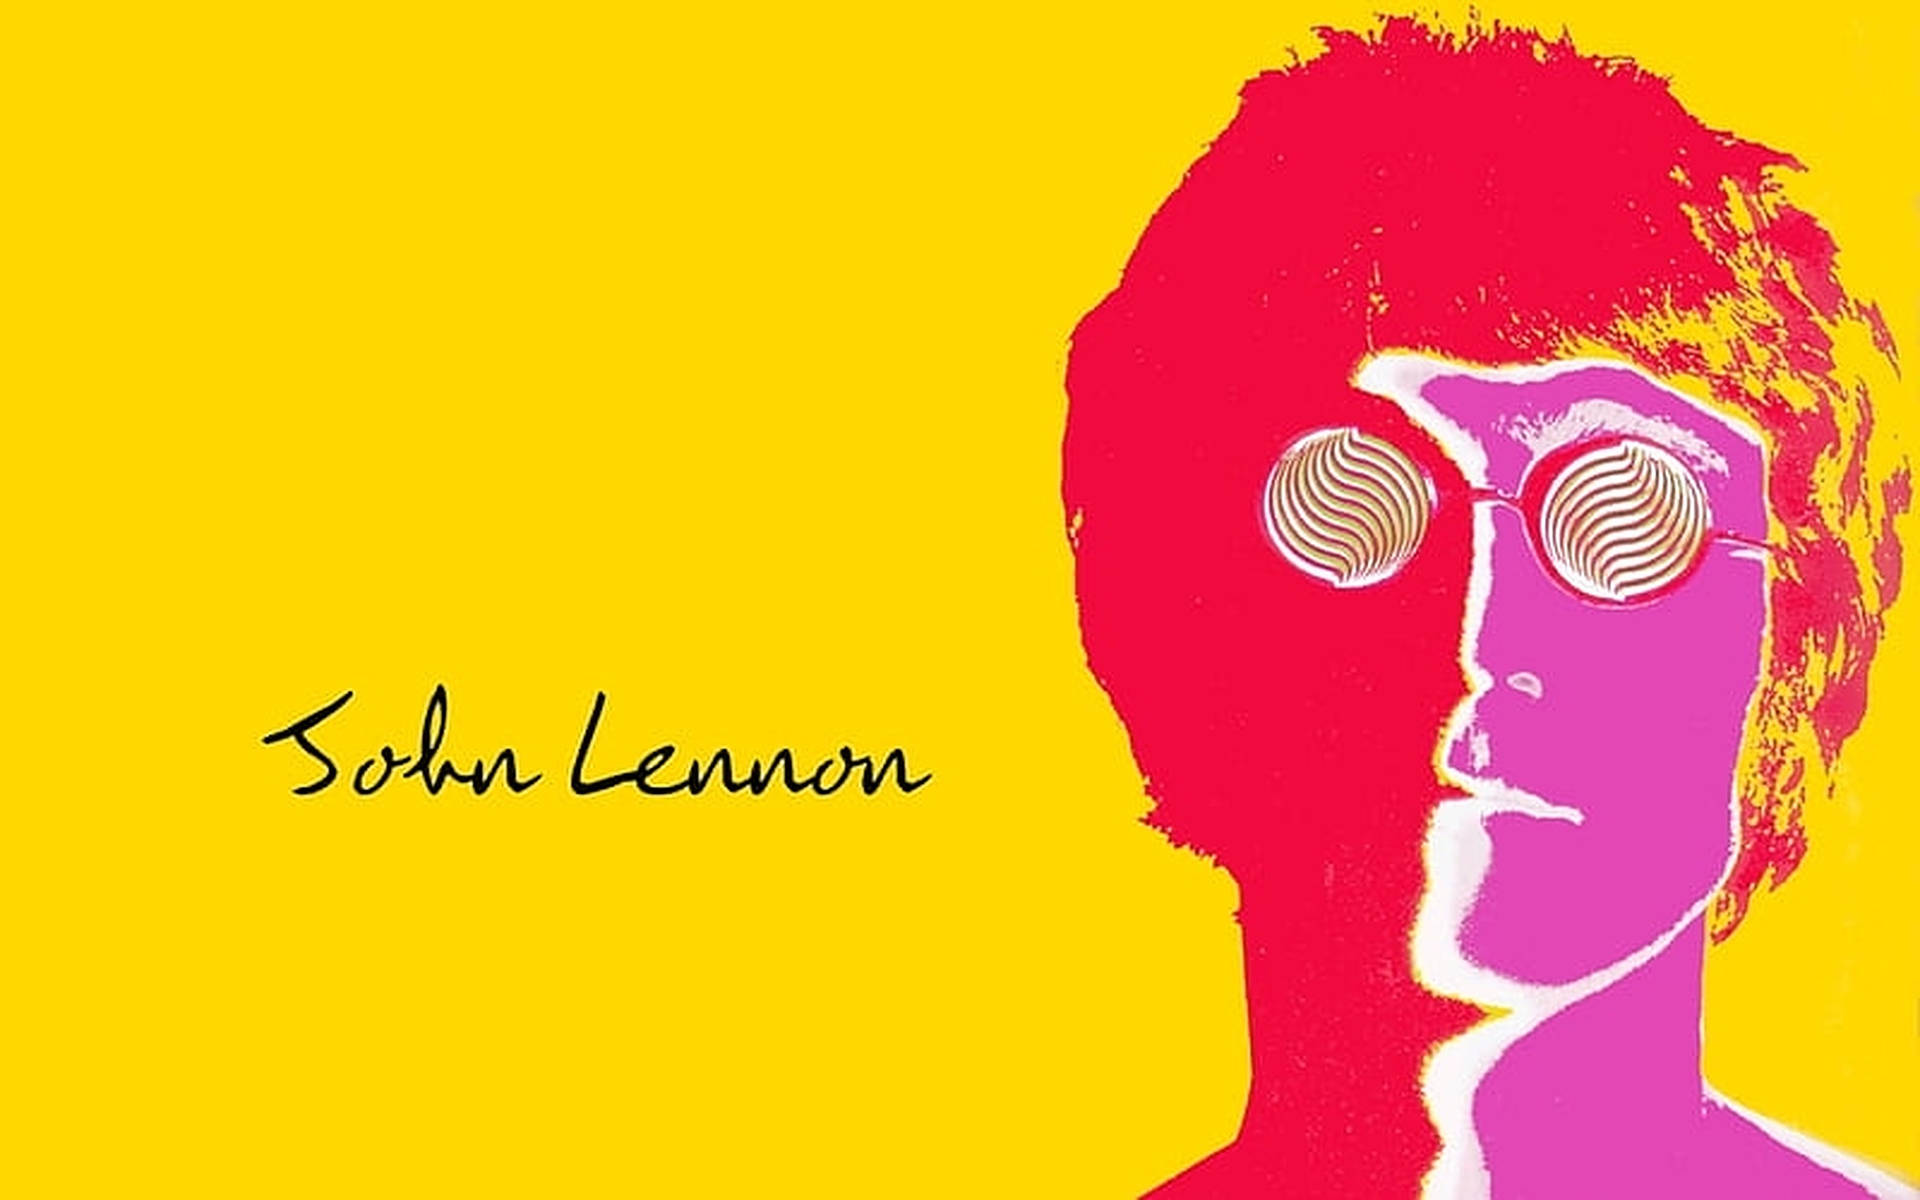 John Lennon Retro Poster Wallpaper